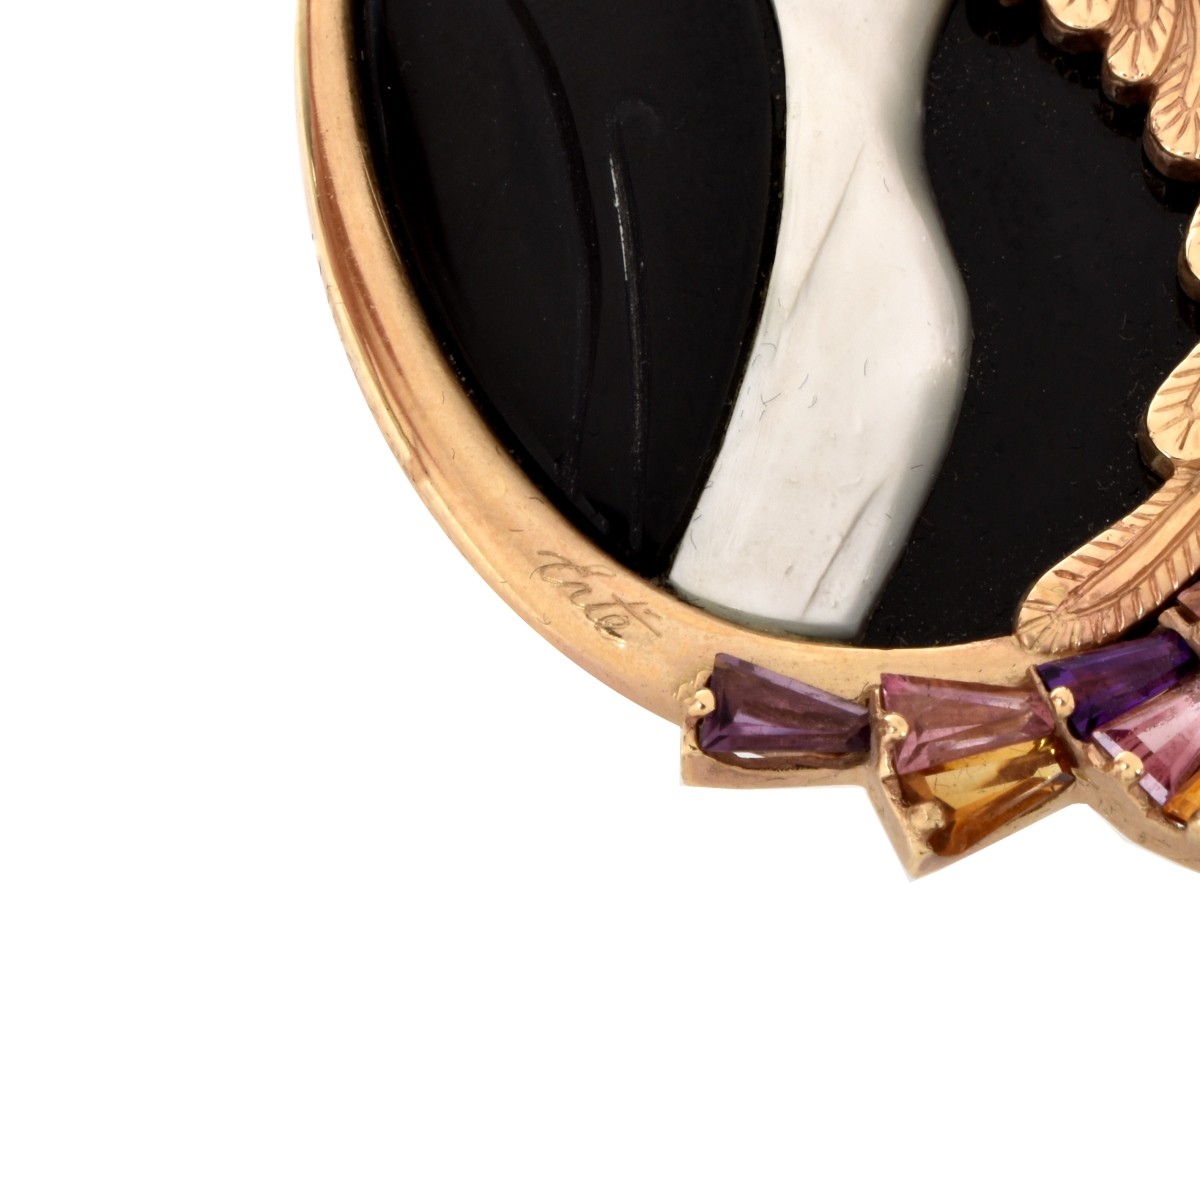 Erte Gemstone, Onyx and 14K Necklace